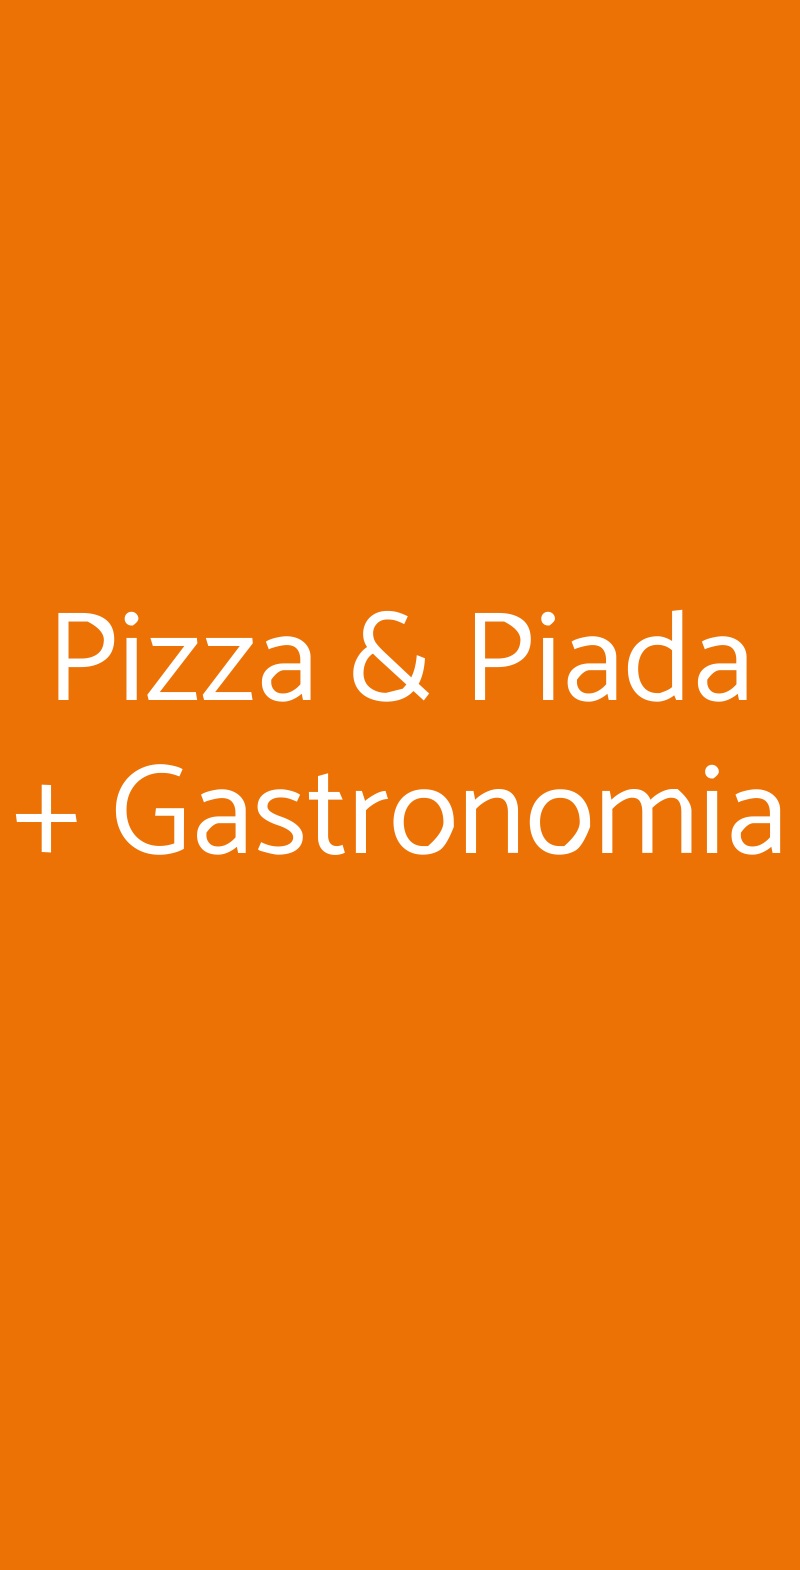 Pizza & Piada + Gastronomia Savignano sul Rubicone menù 1 pagina